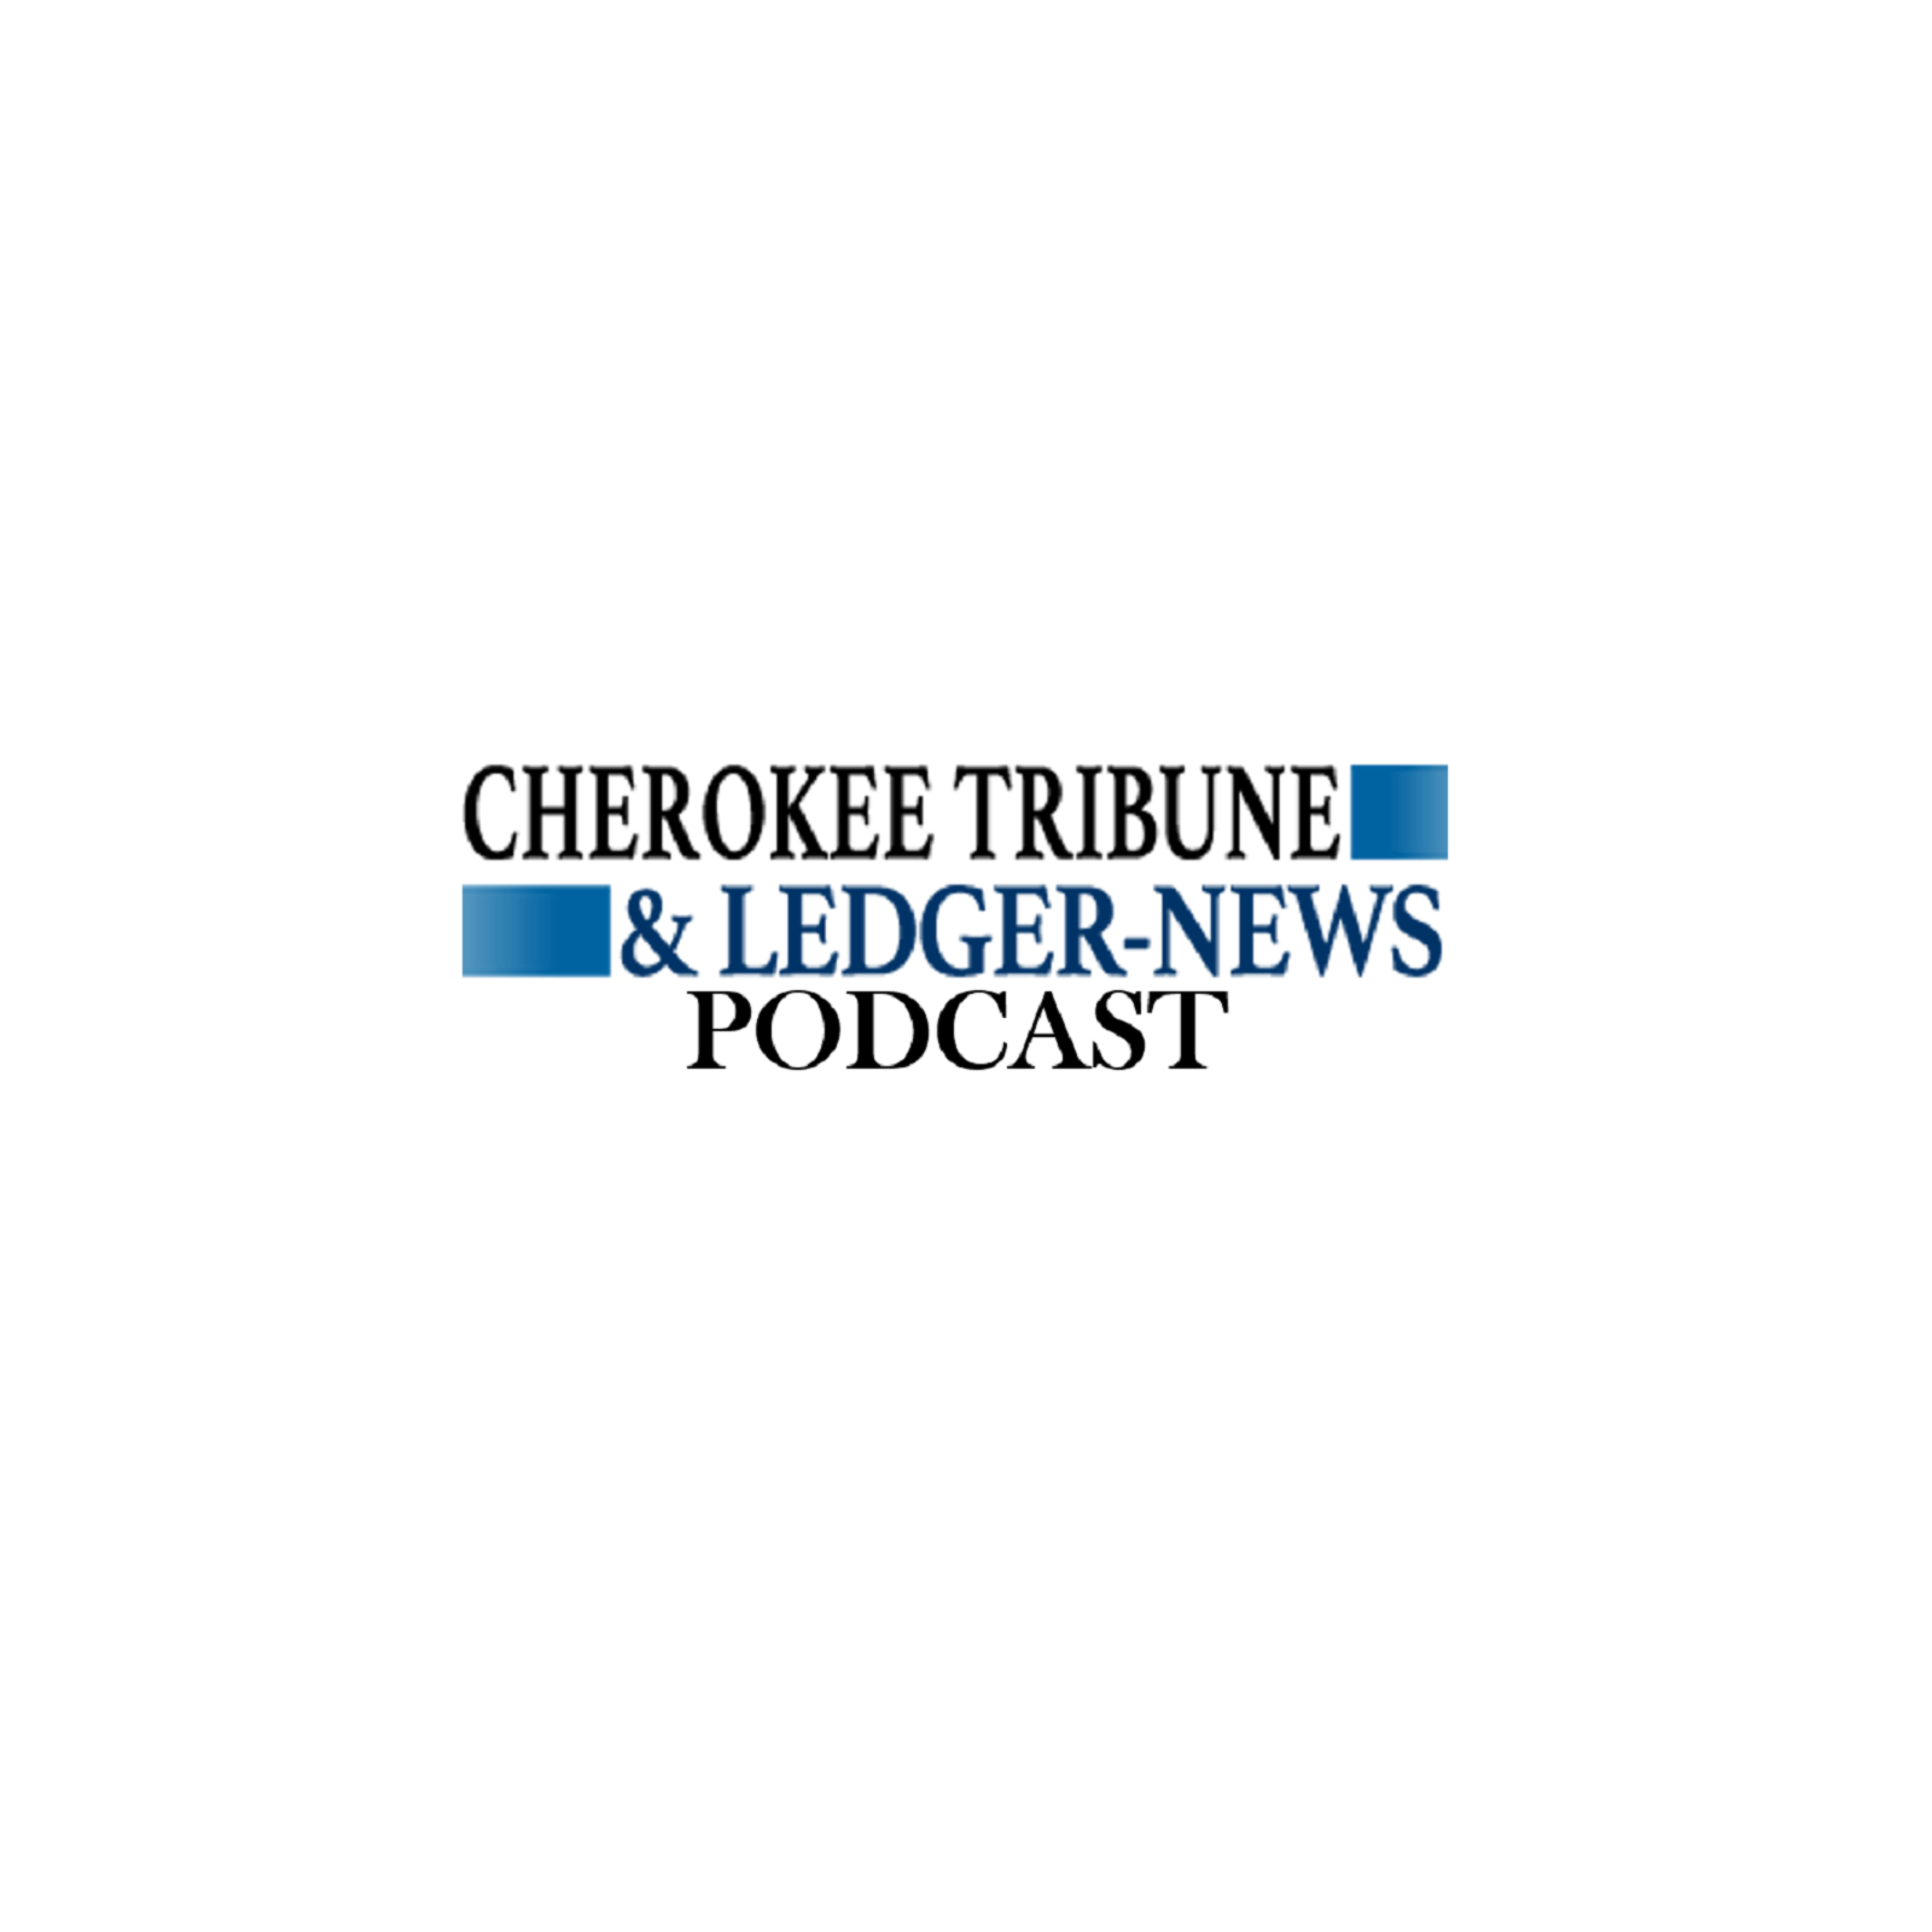 Gang Crimes Penetrate Cherokee County